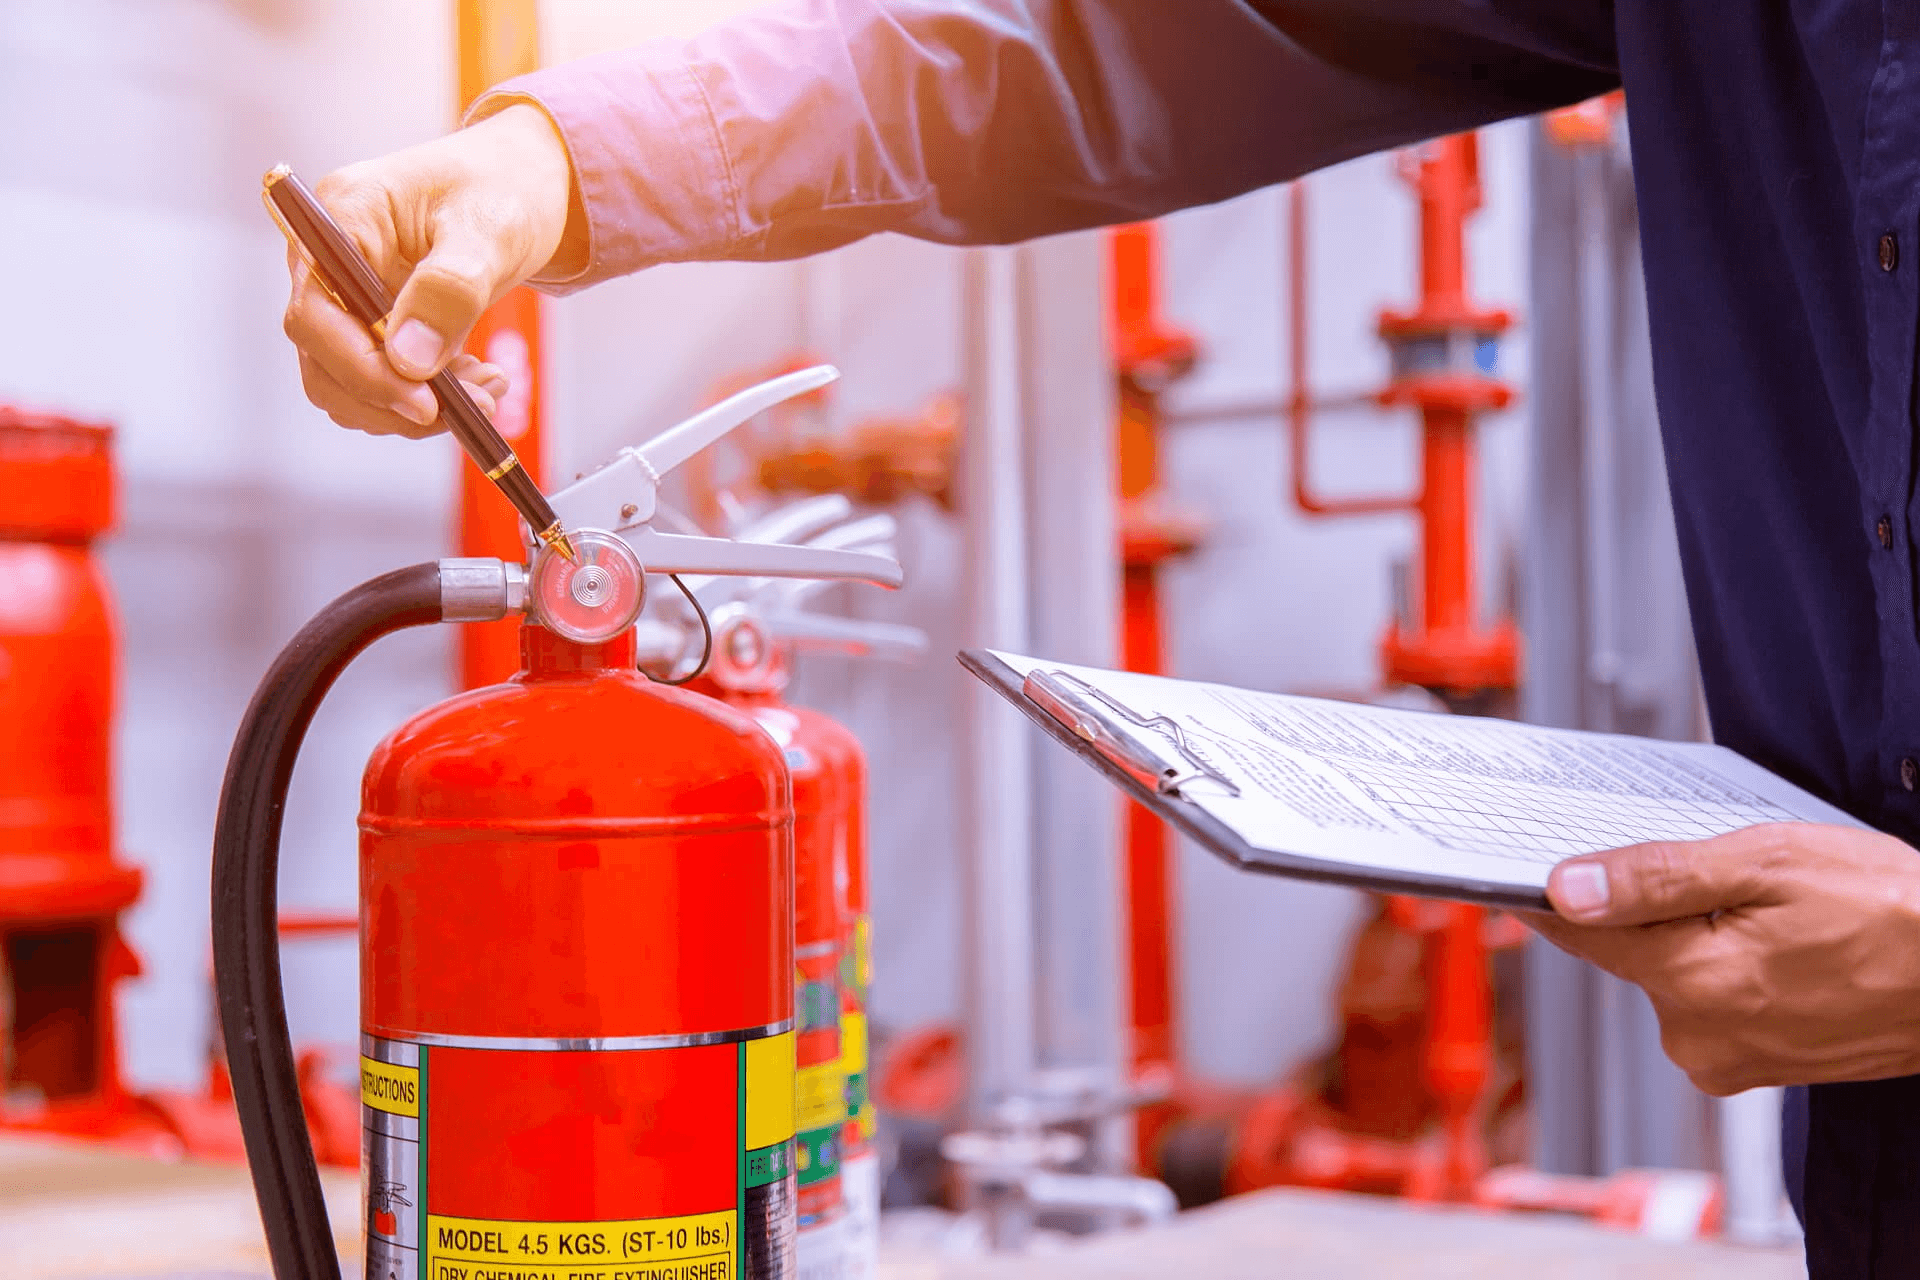 Пожарно-технический минимум для руководителей и лиц, ответственных за пожарную безопасность организаций (предприятий) и проведение противопожарного инструктажа